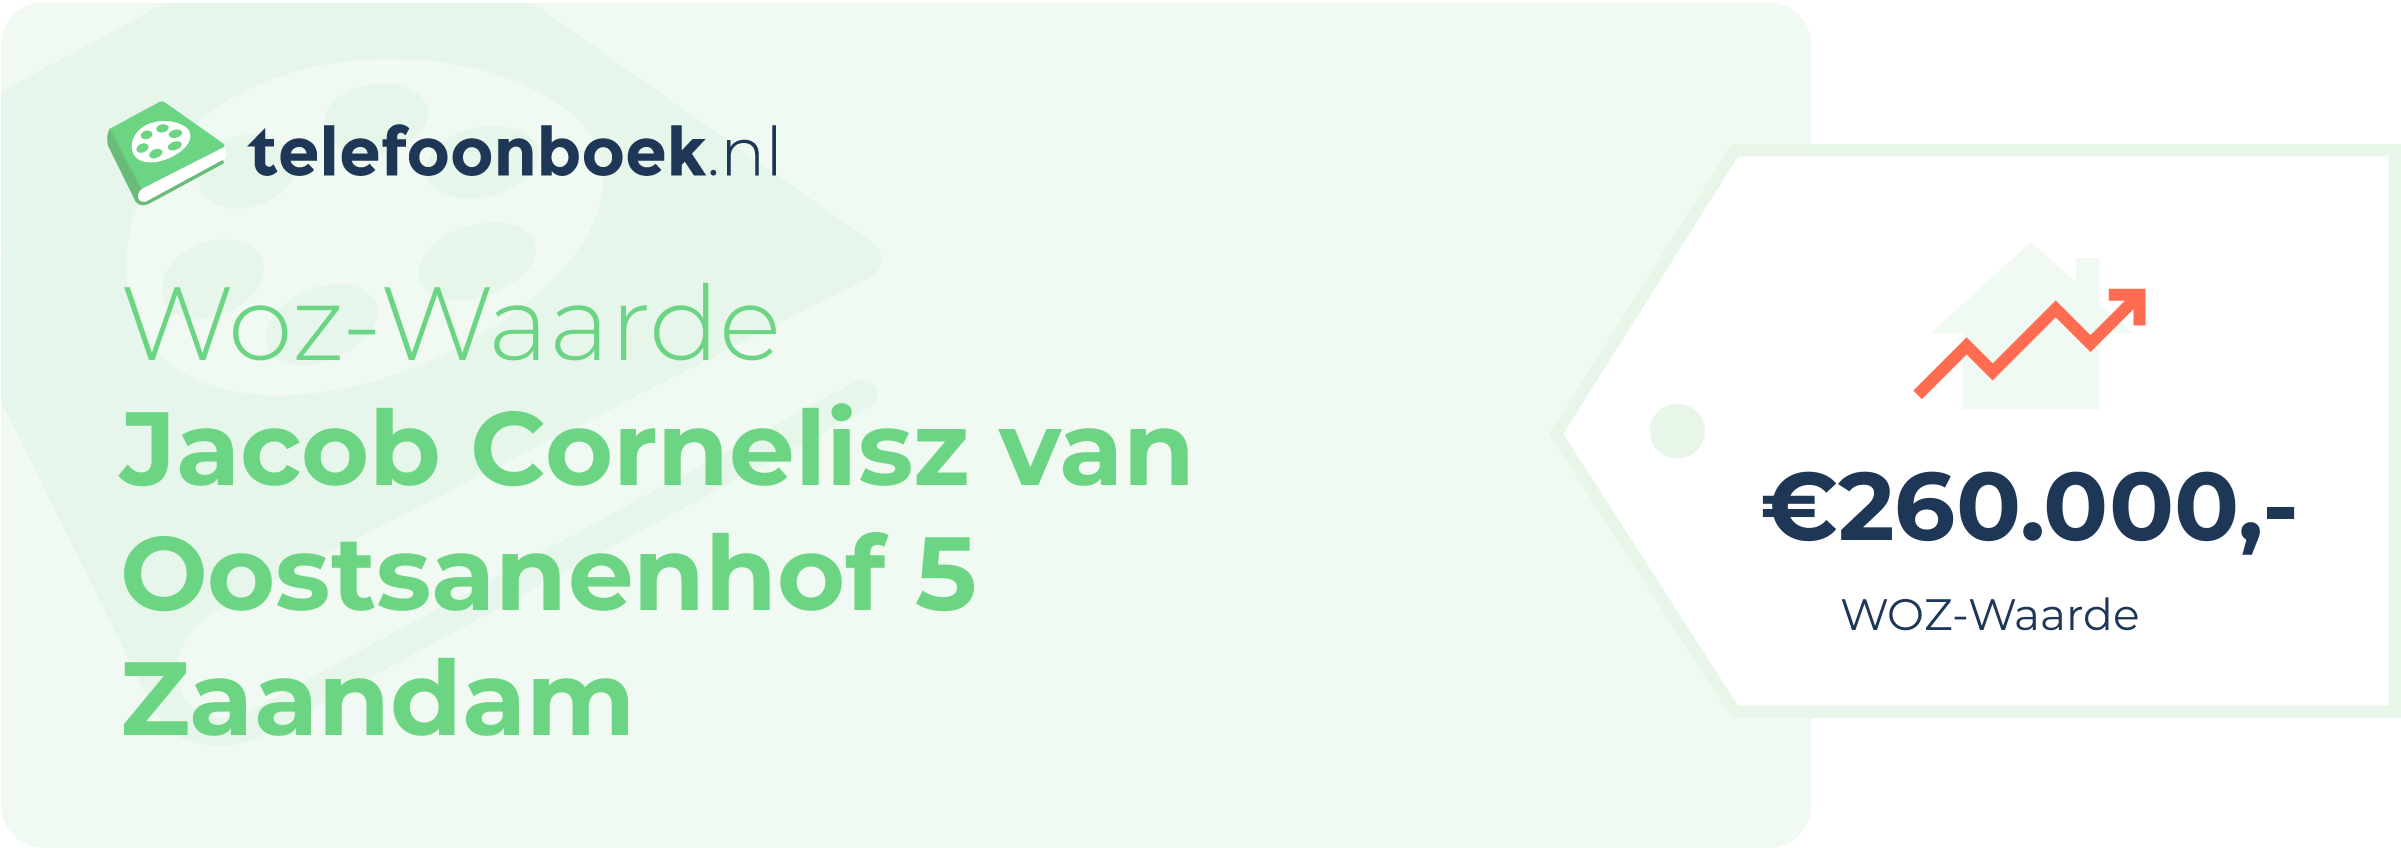 WOZ-waarde Jacob Cornelisz Van Oostsanenhof 5 Zaandam